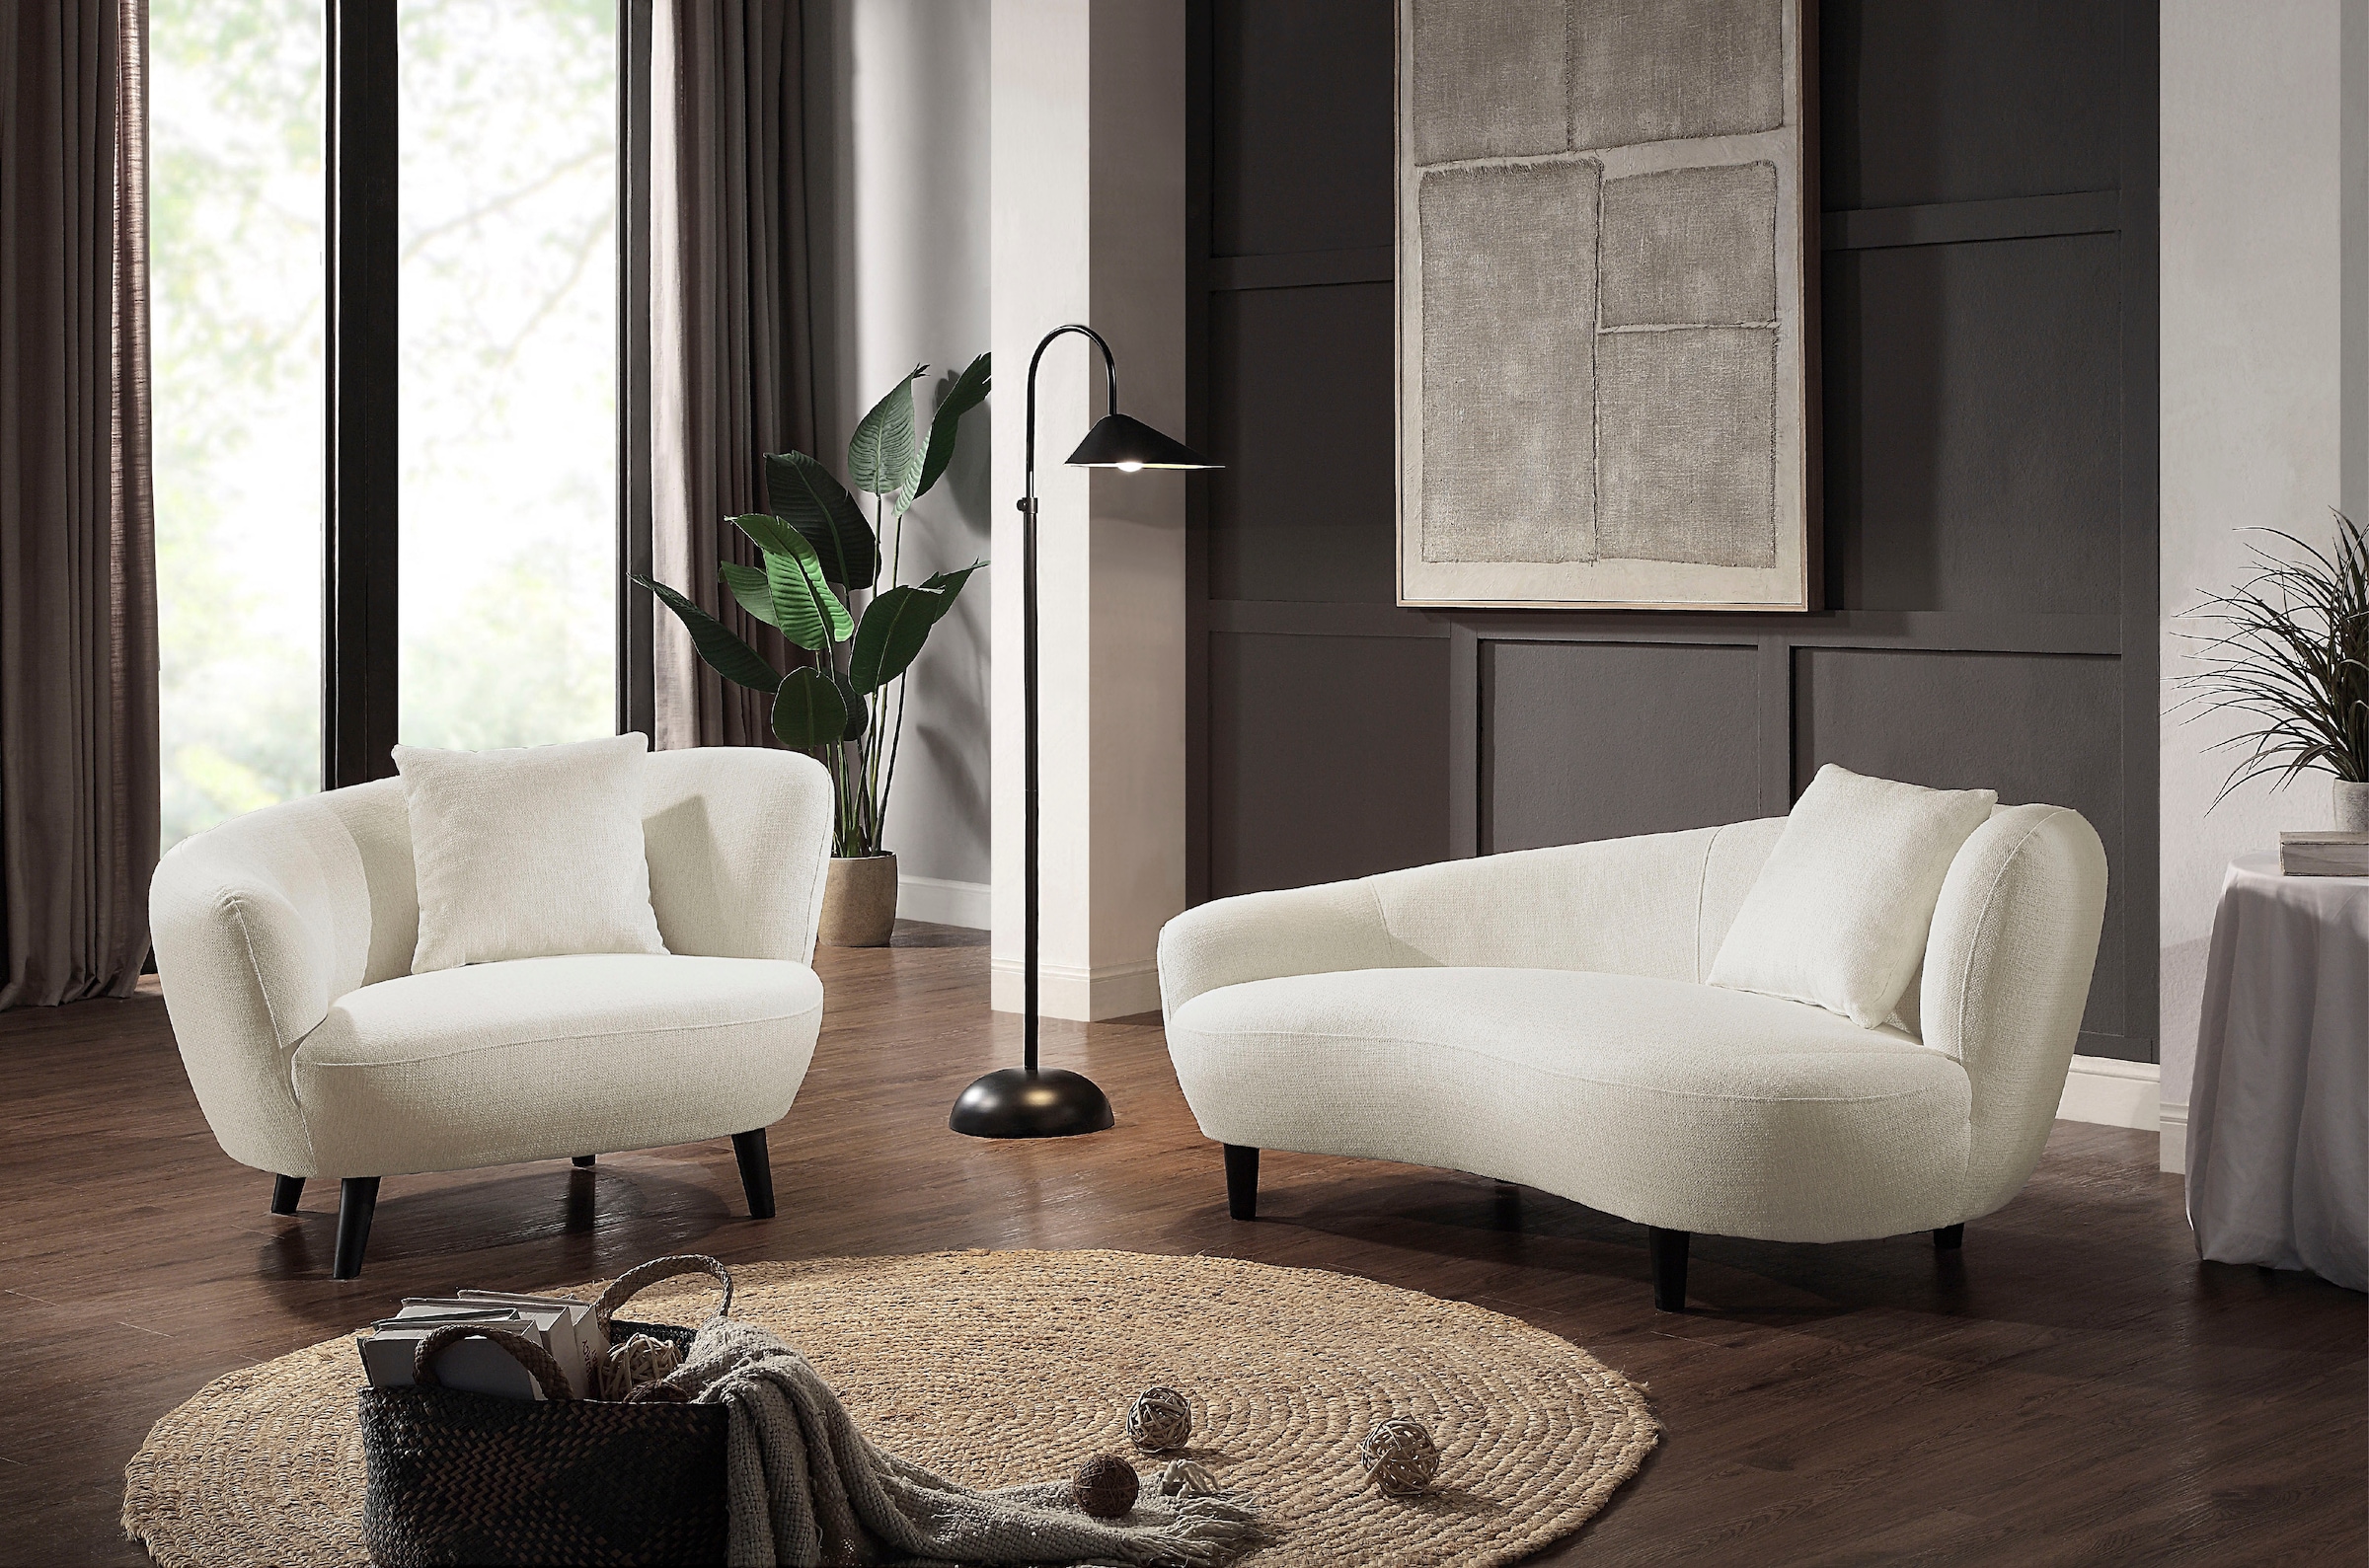 Lounge-Sessel für relaxte Ackermann Stunden 